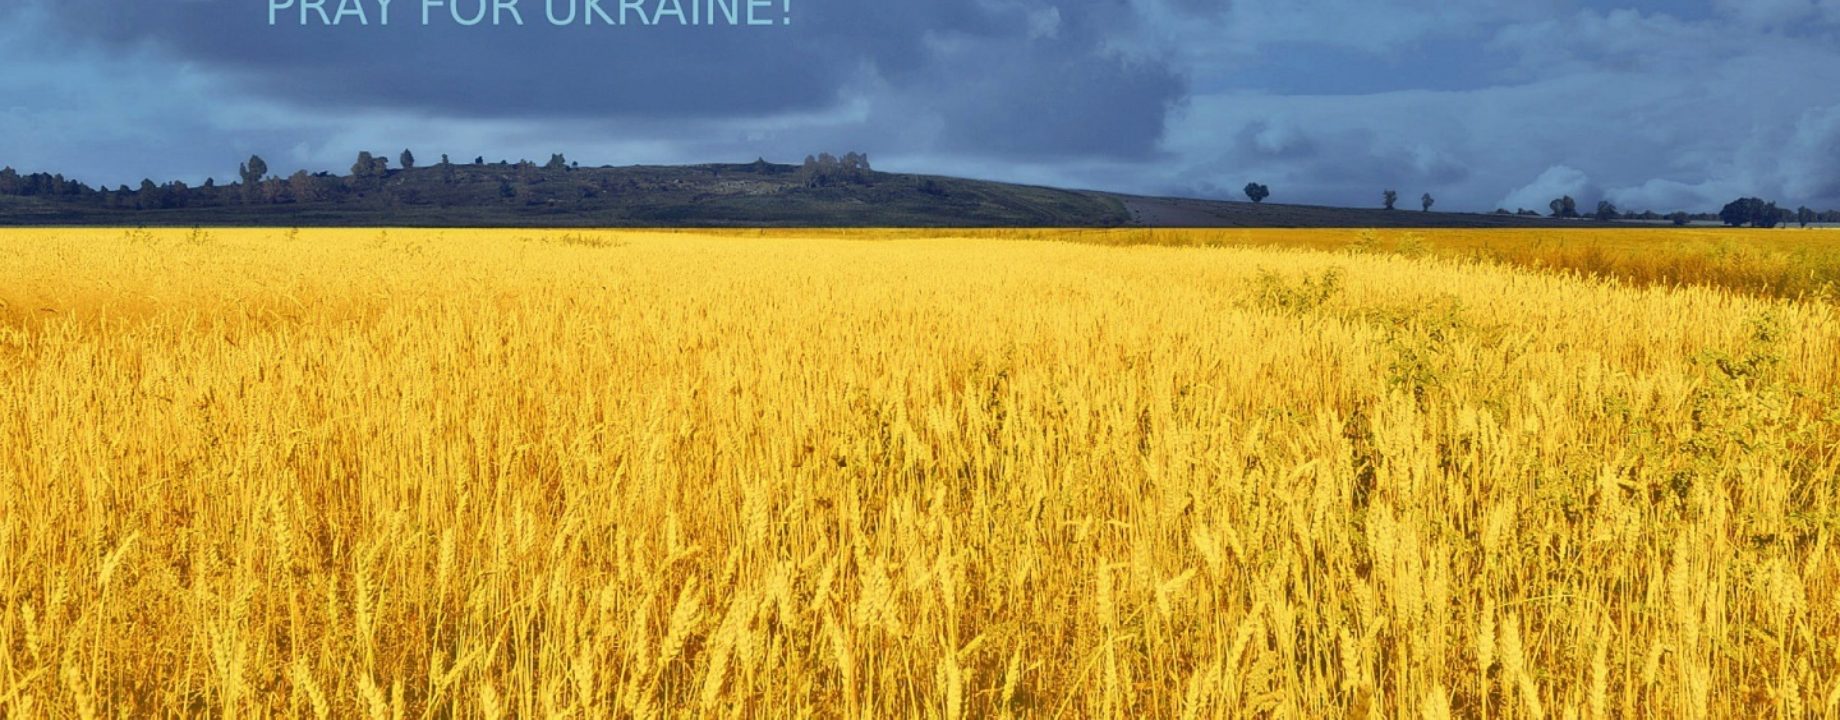 Pray for ukraine hd wallpaper wallpaper 483854946